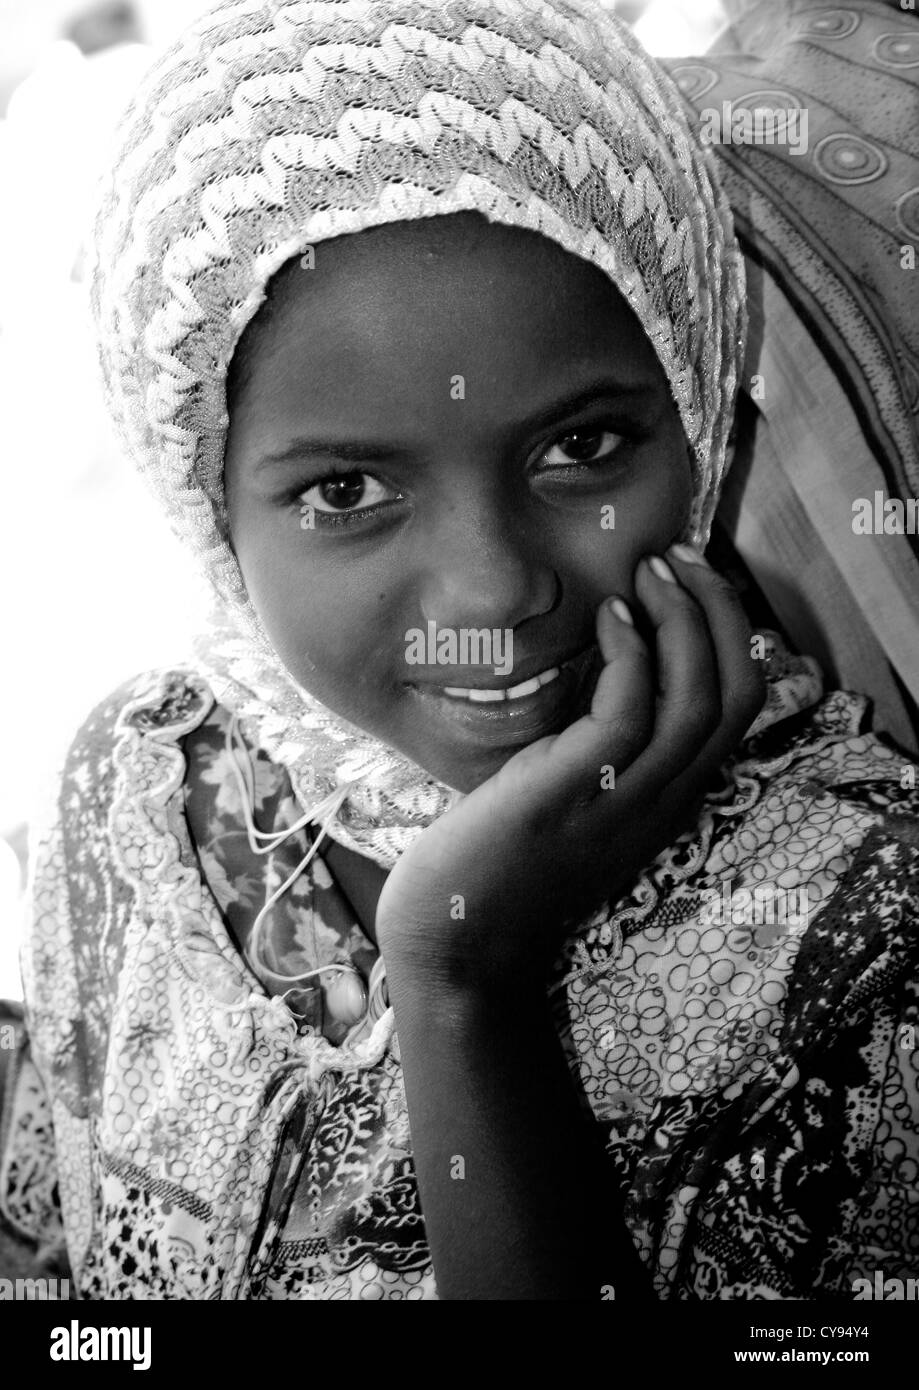 Girl From Eritrea, Keren, Eritrea Stock Photo